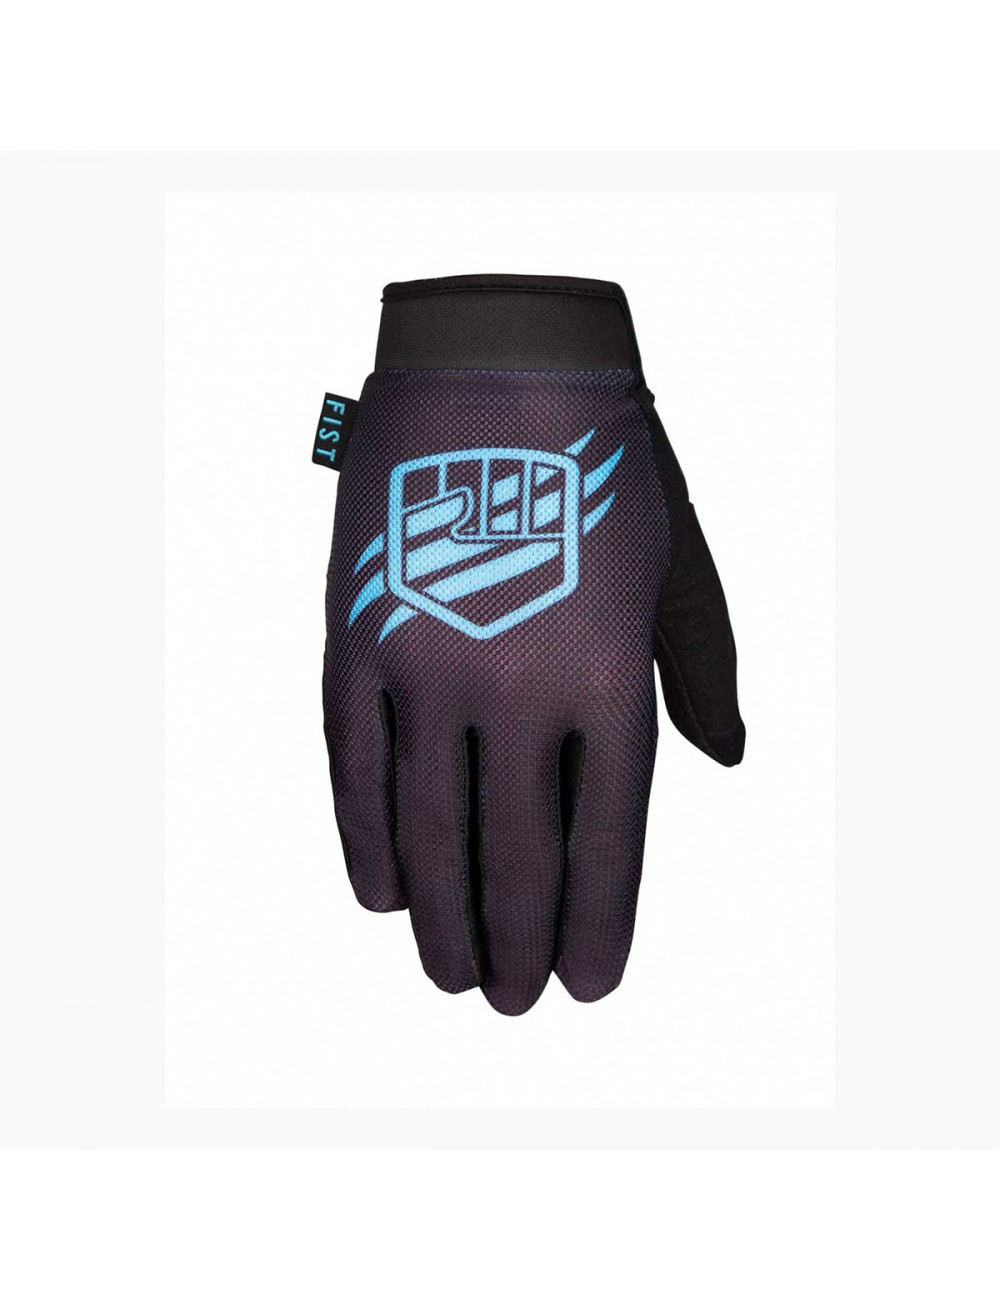 Fist Gloves - Breezer